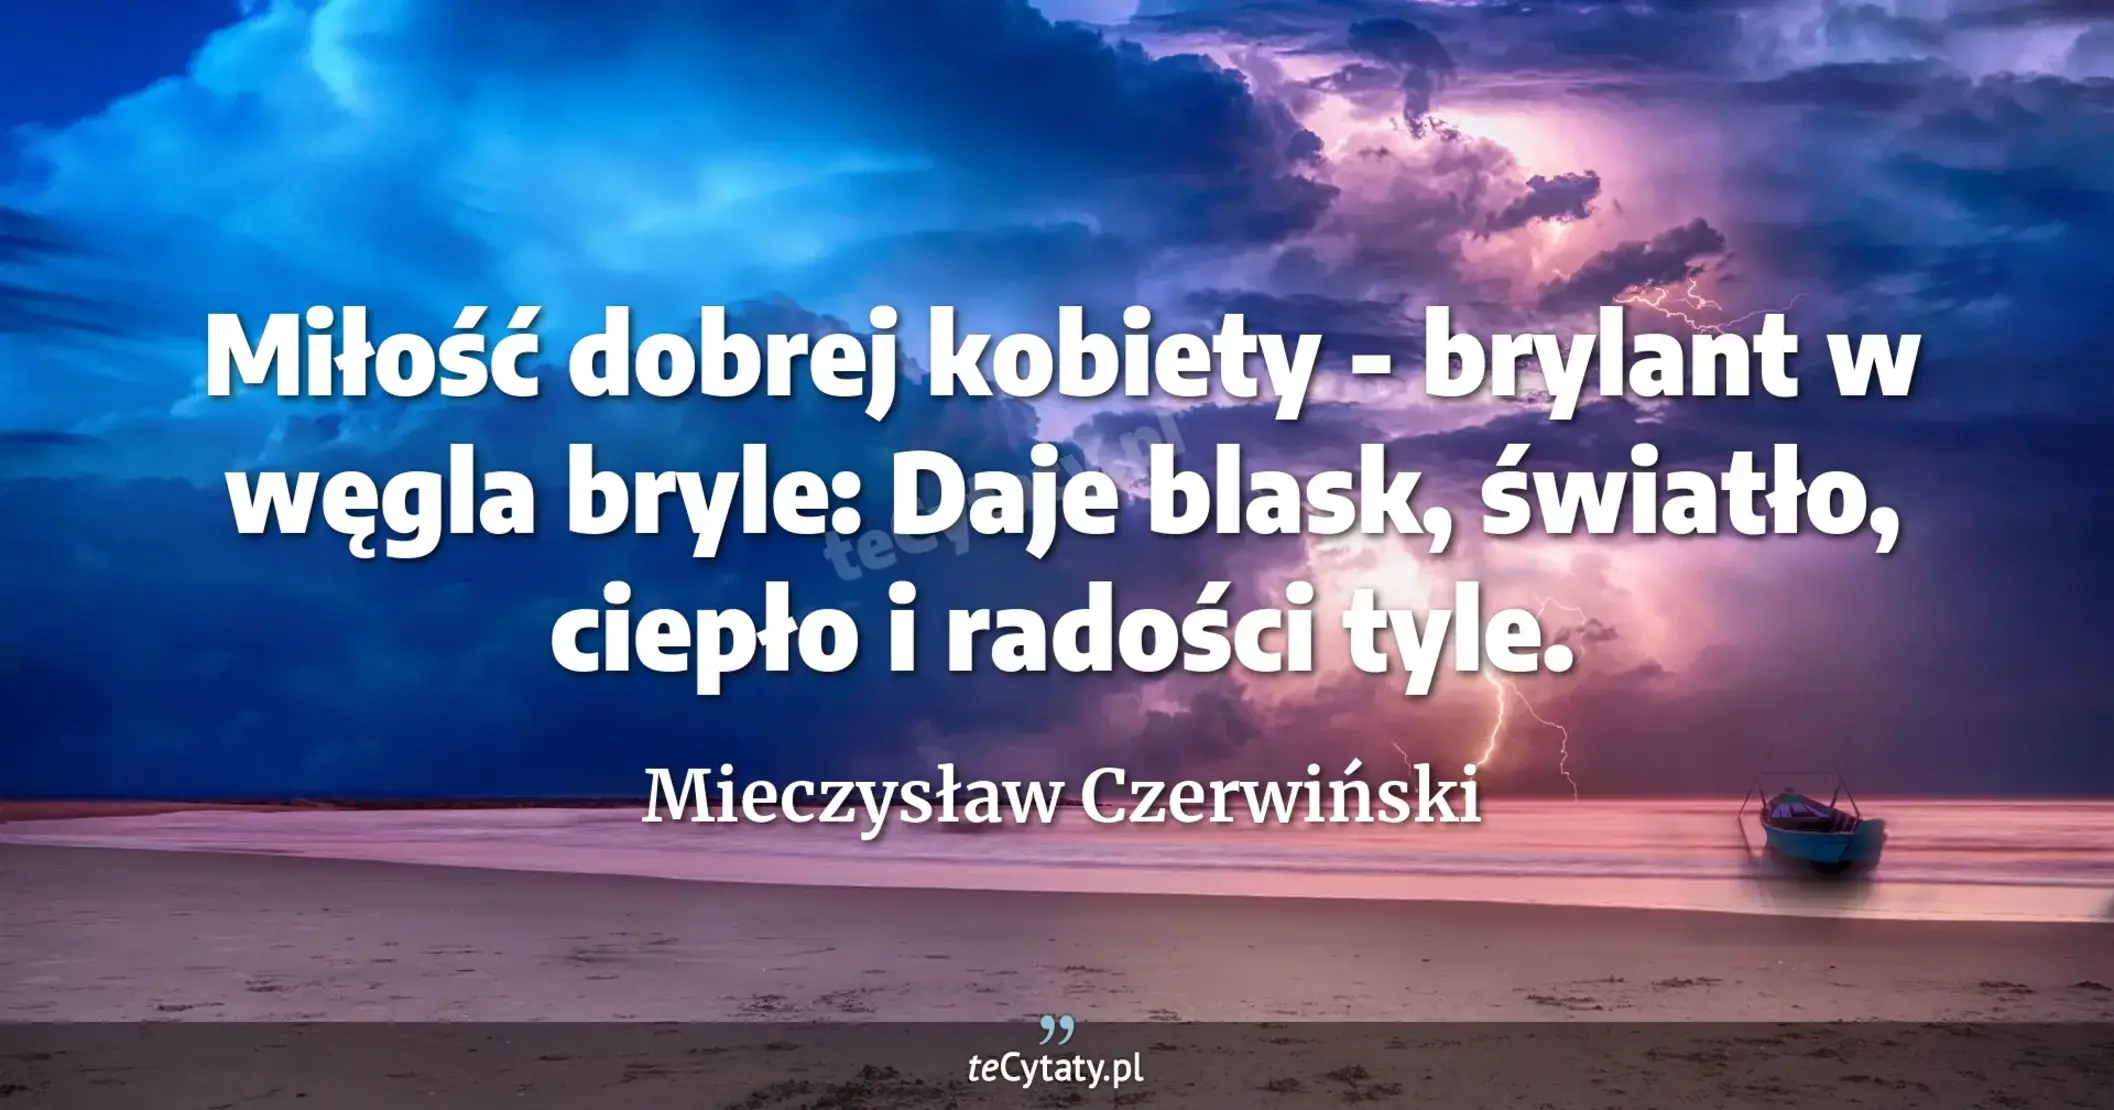 Miłość dobrej kobiety - brylant w węgla bryle: <br> Daje blask, światło, ciepło i radości tyle. - Mieczysław Czerwiński